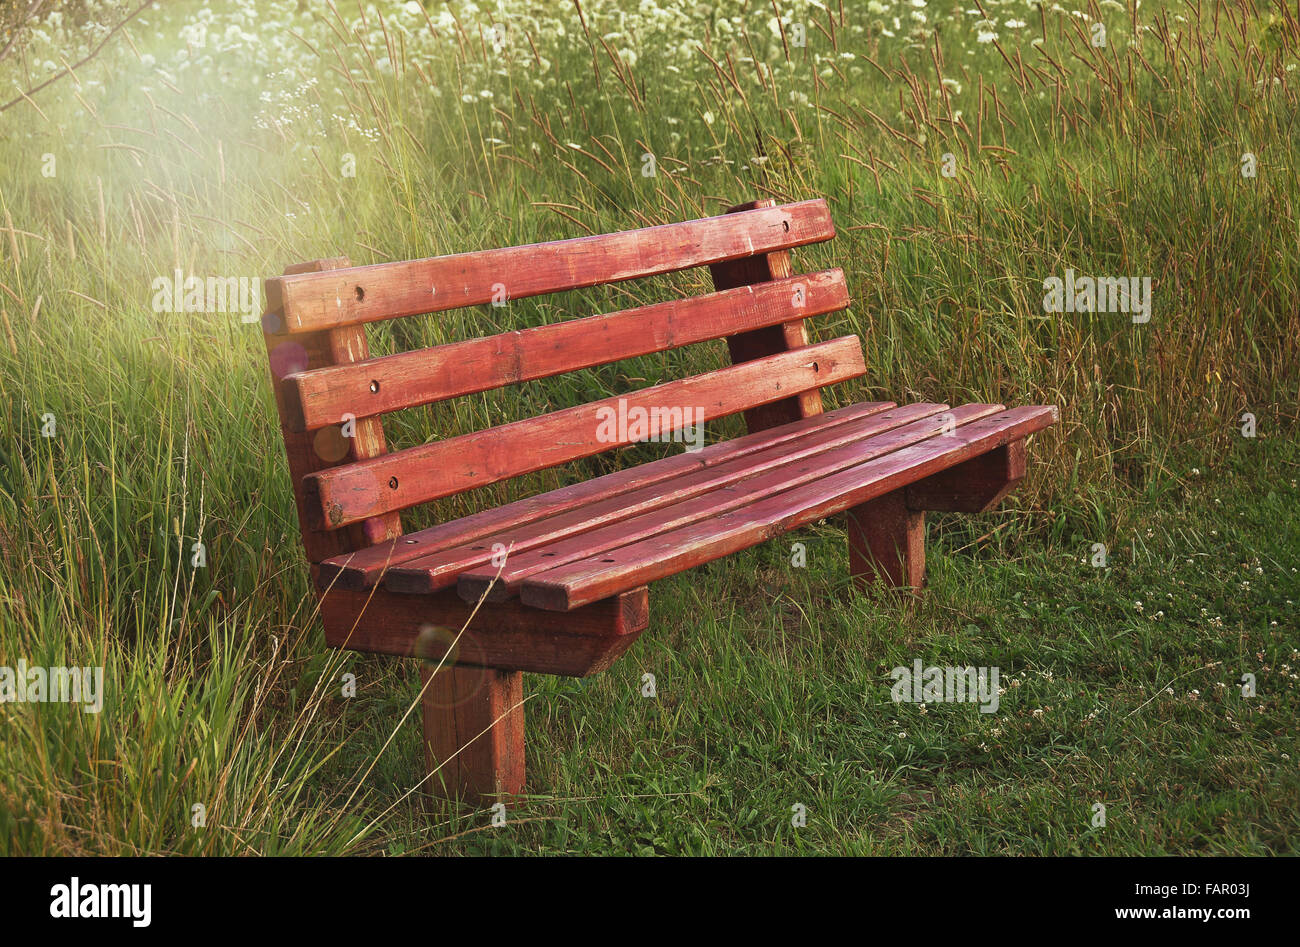 Holzbank im Sommer Bereich Wildblumen mit Sonne flare Beleuchtung. Stockfoto